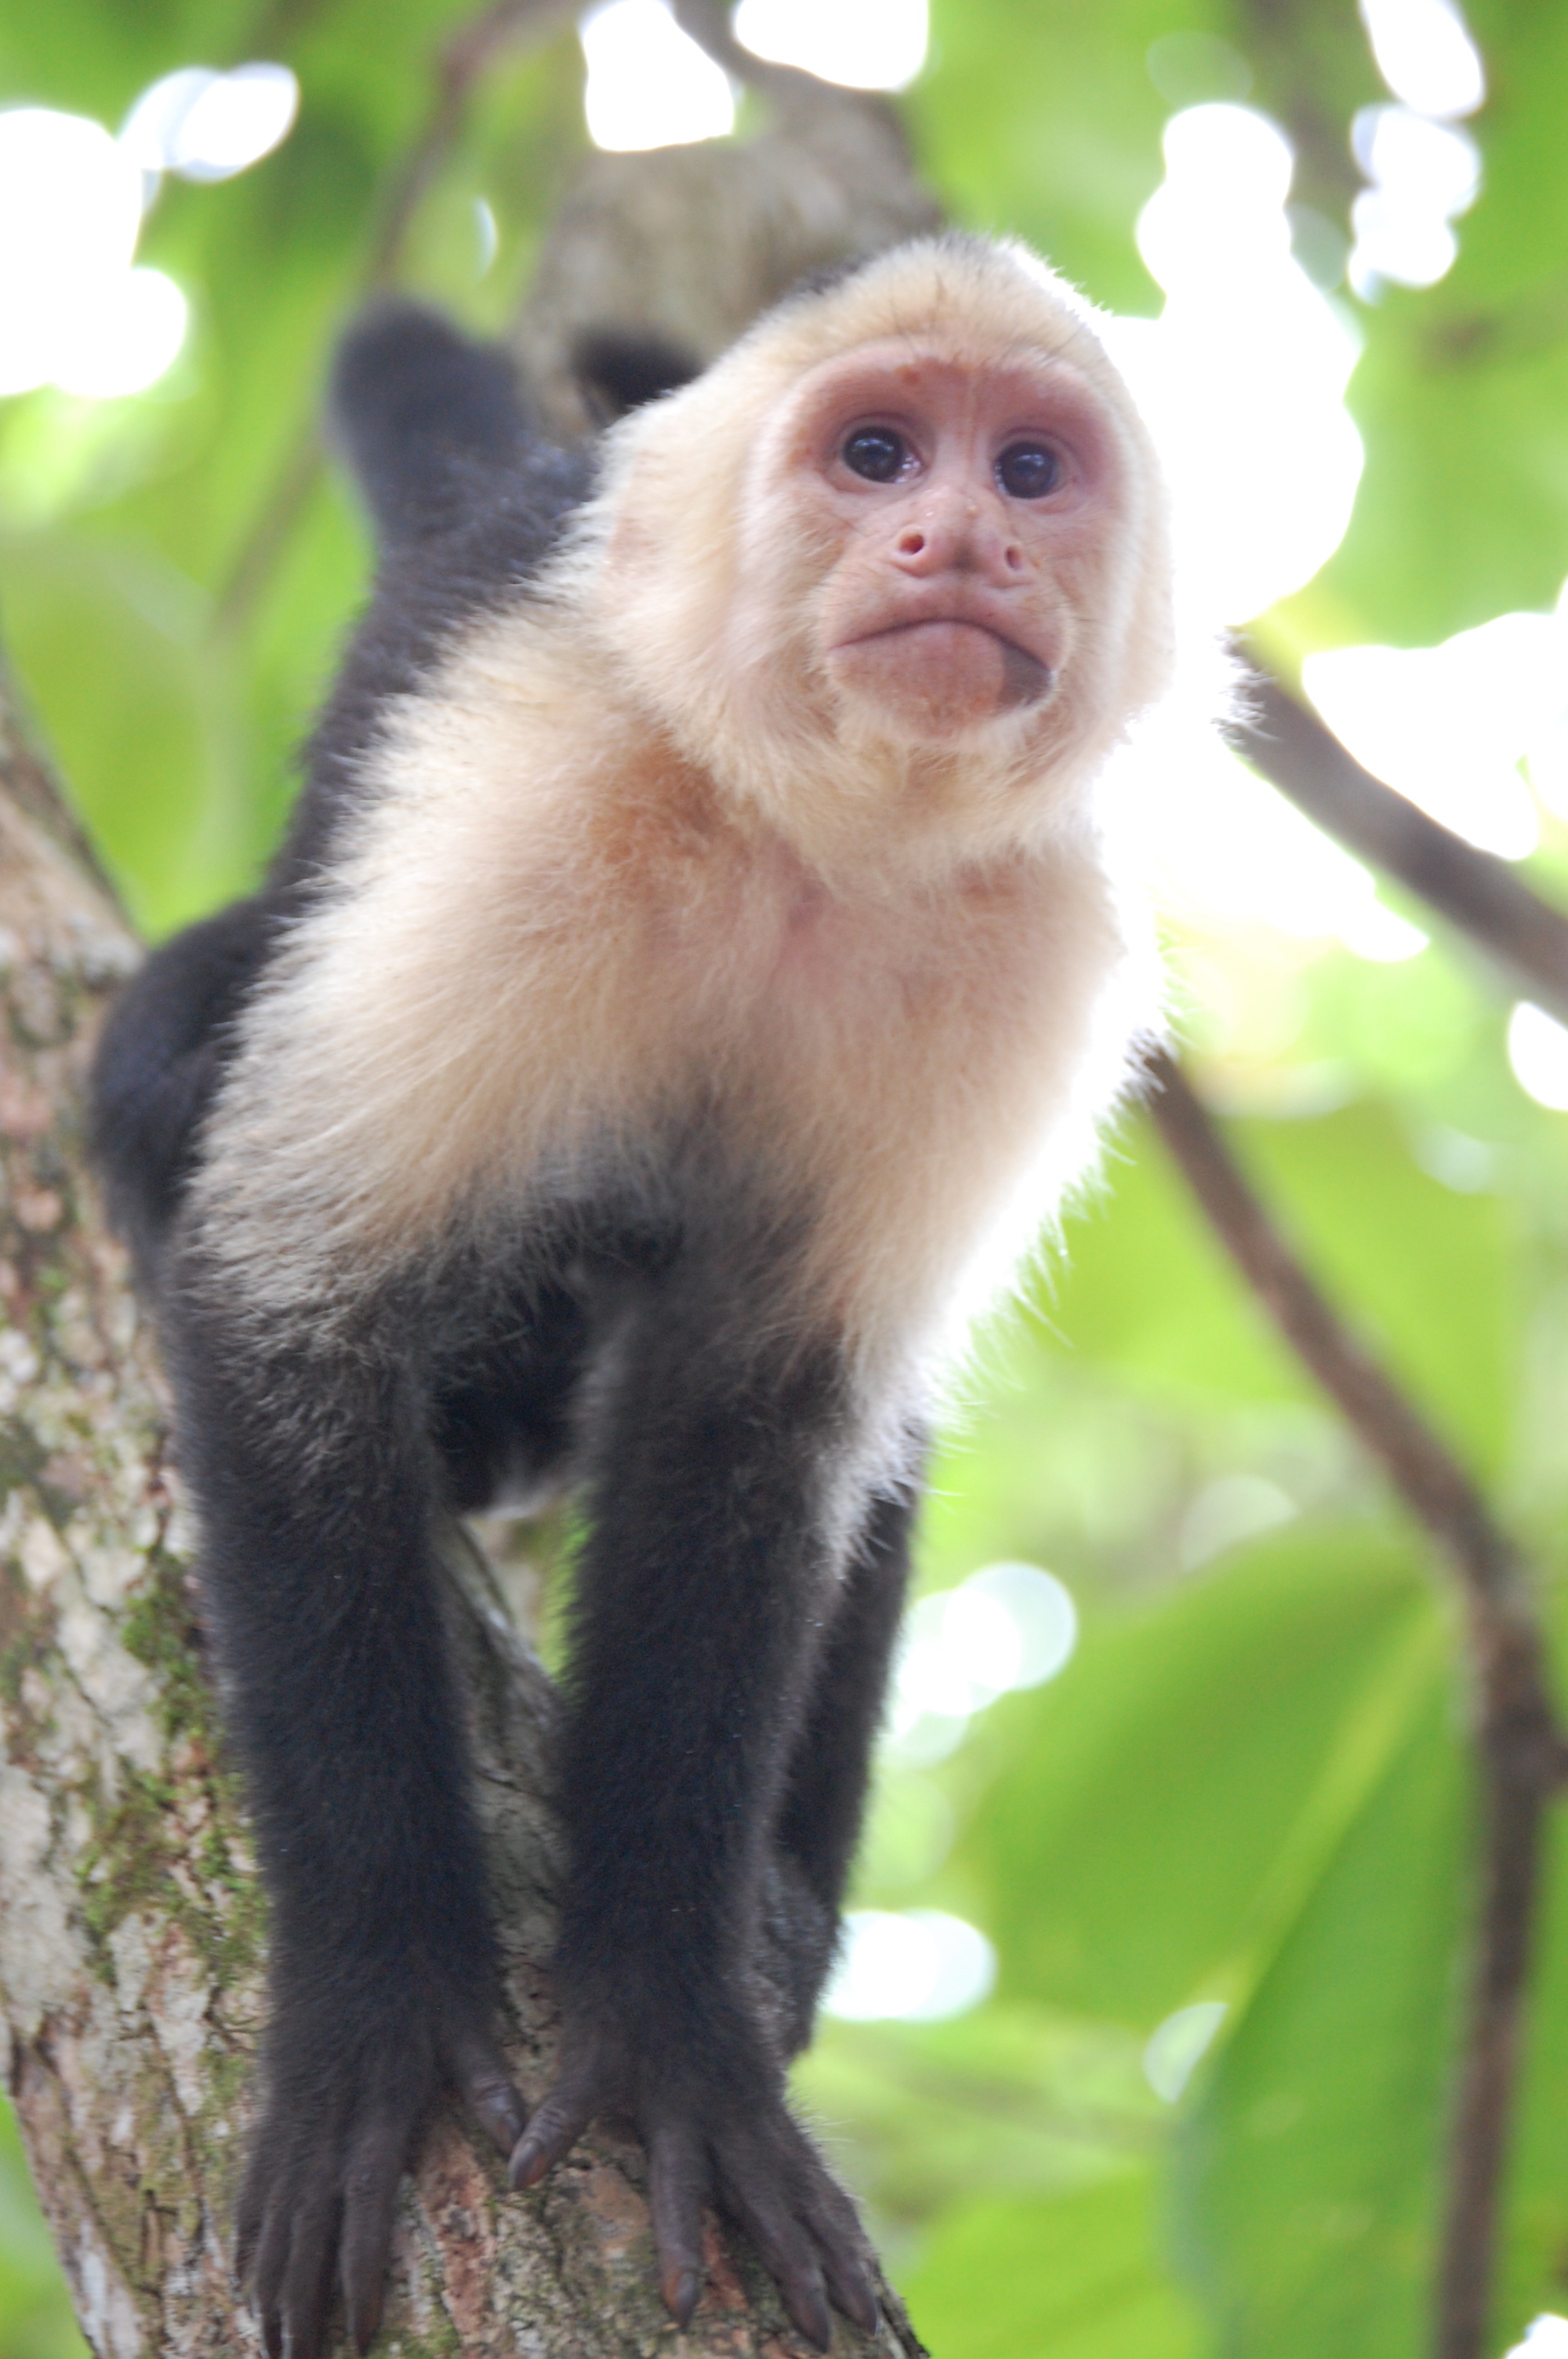 A white-capuchin monkey in Costa Rica